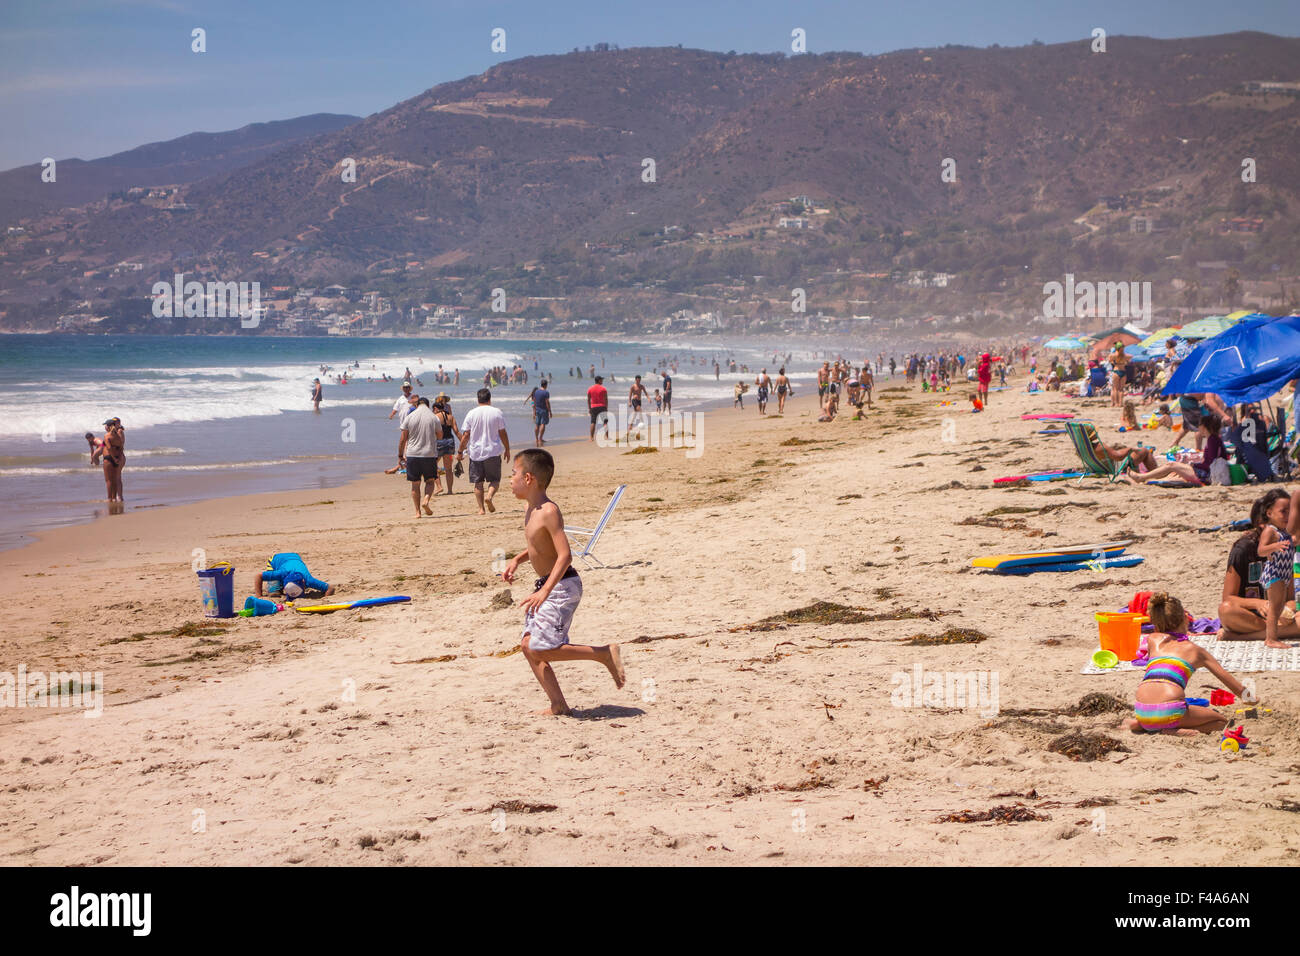 ZUMA Beach, Californie, USA - Personnes à Zuma beach, plage publique au nord de Malibu. Banque D'Images